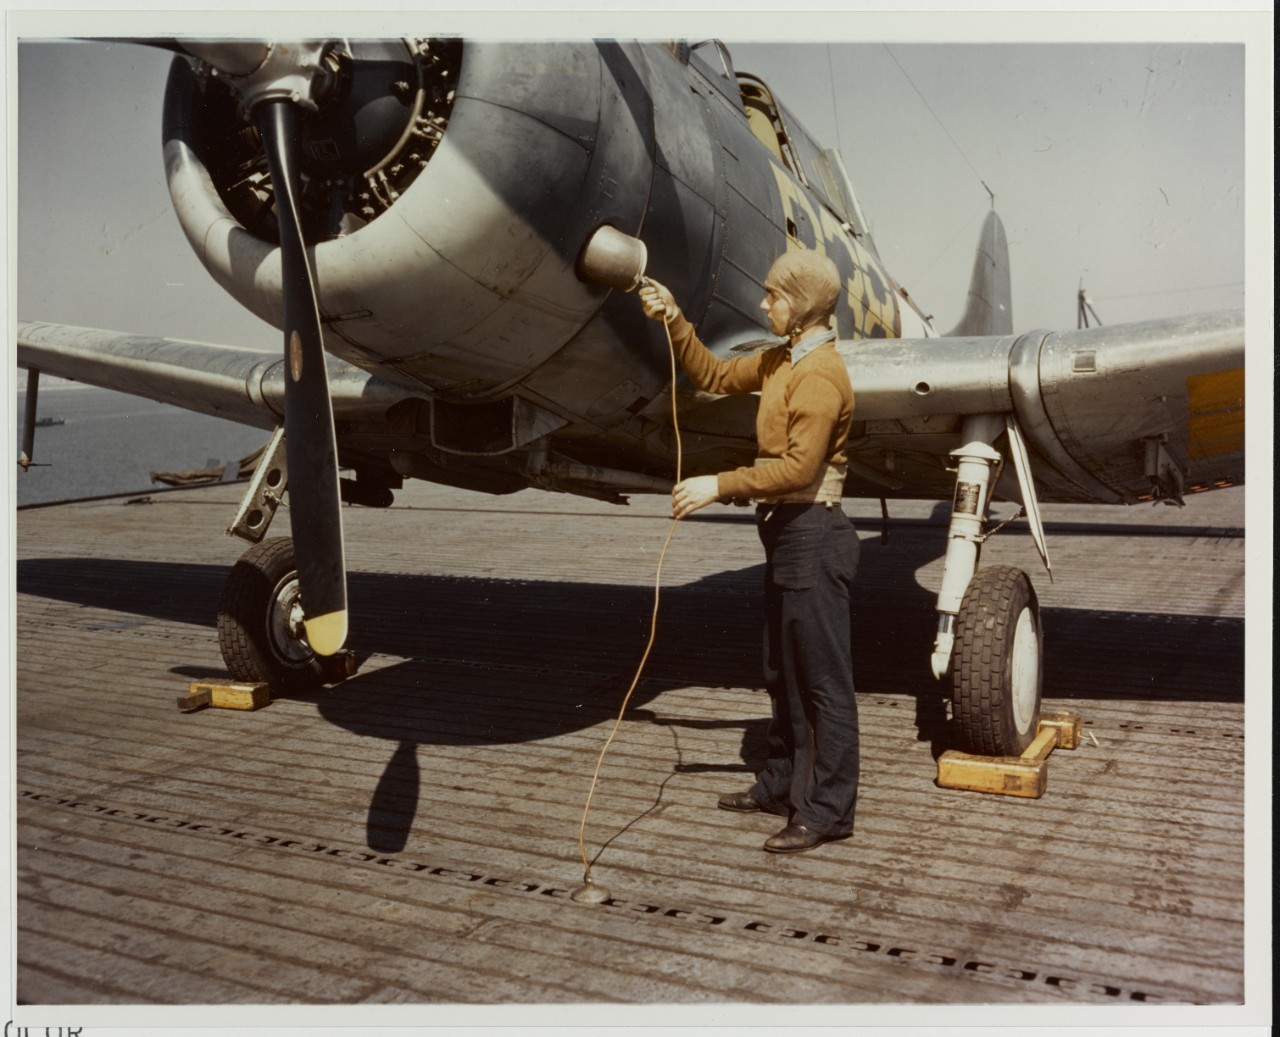 Plane captain attaches ground wire, circa 1943-1945